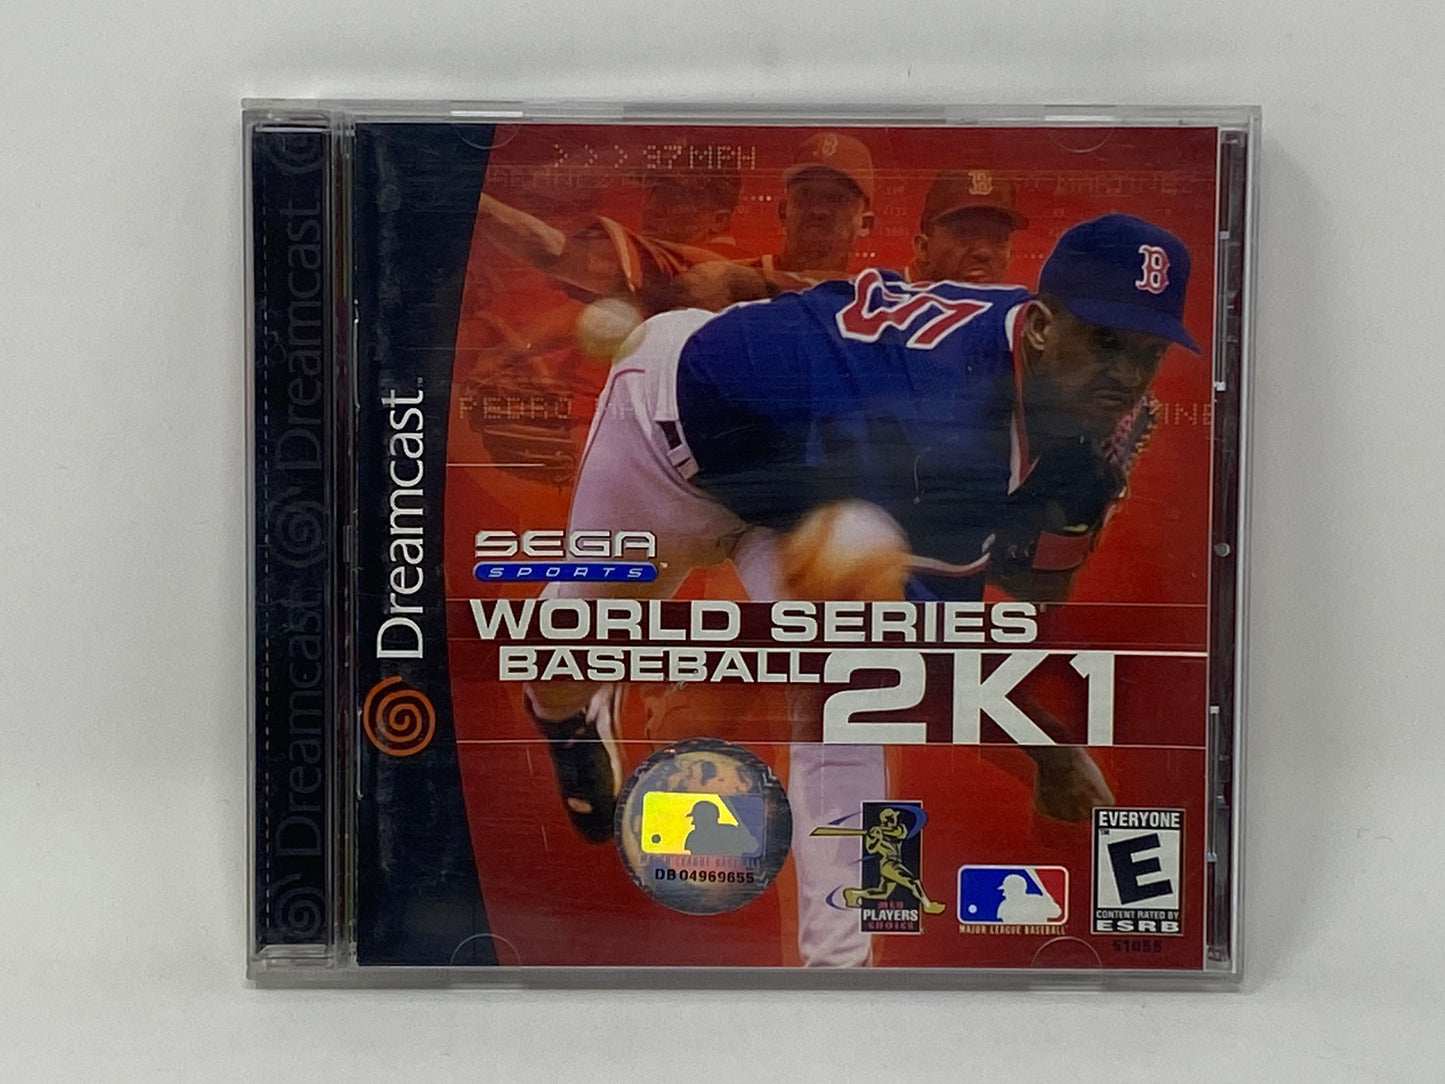 Sega Dreamcast - World Series Baseball 2K1